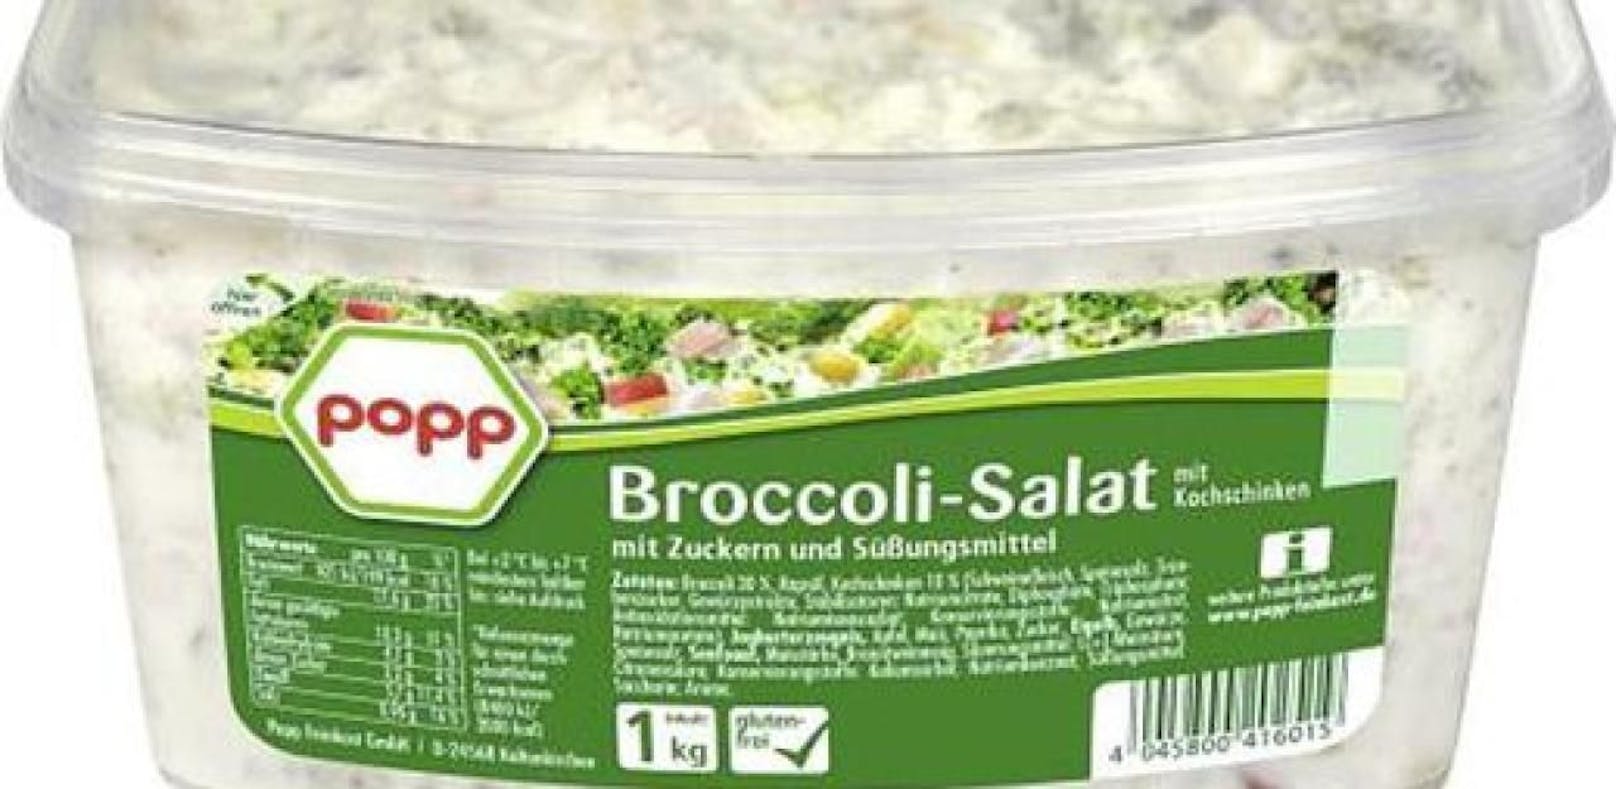 Popp Broccolisalat 1 kg ist betroffen.